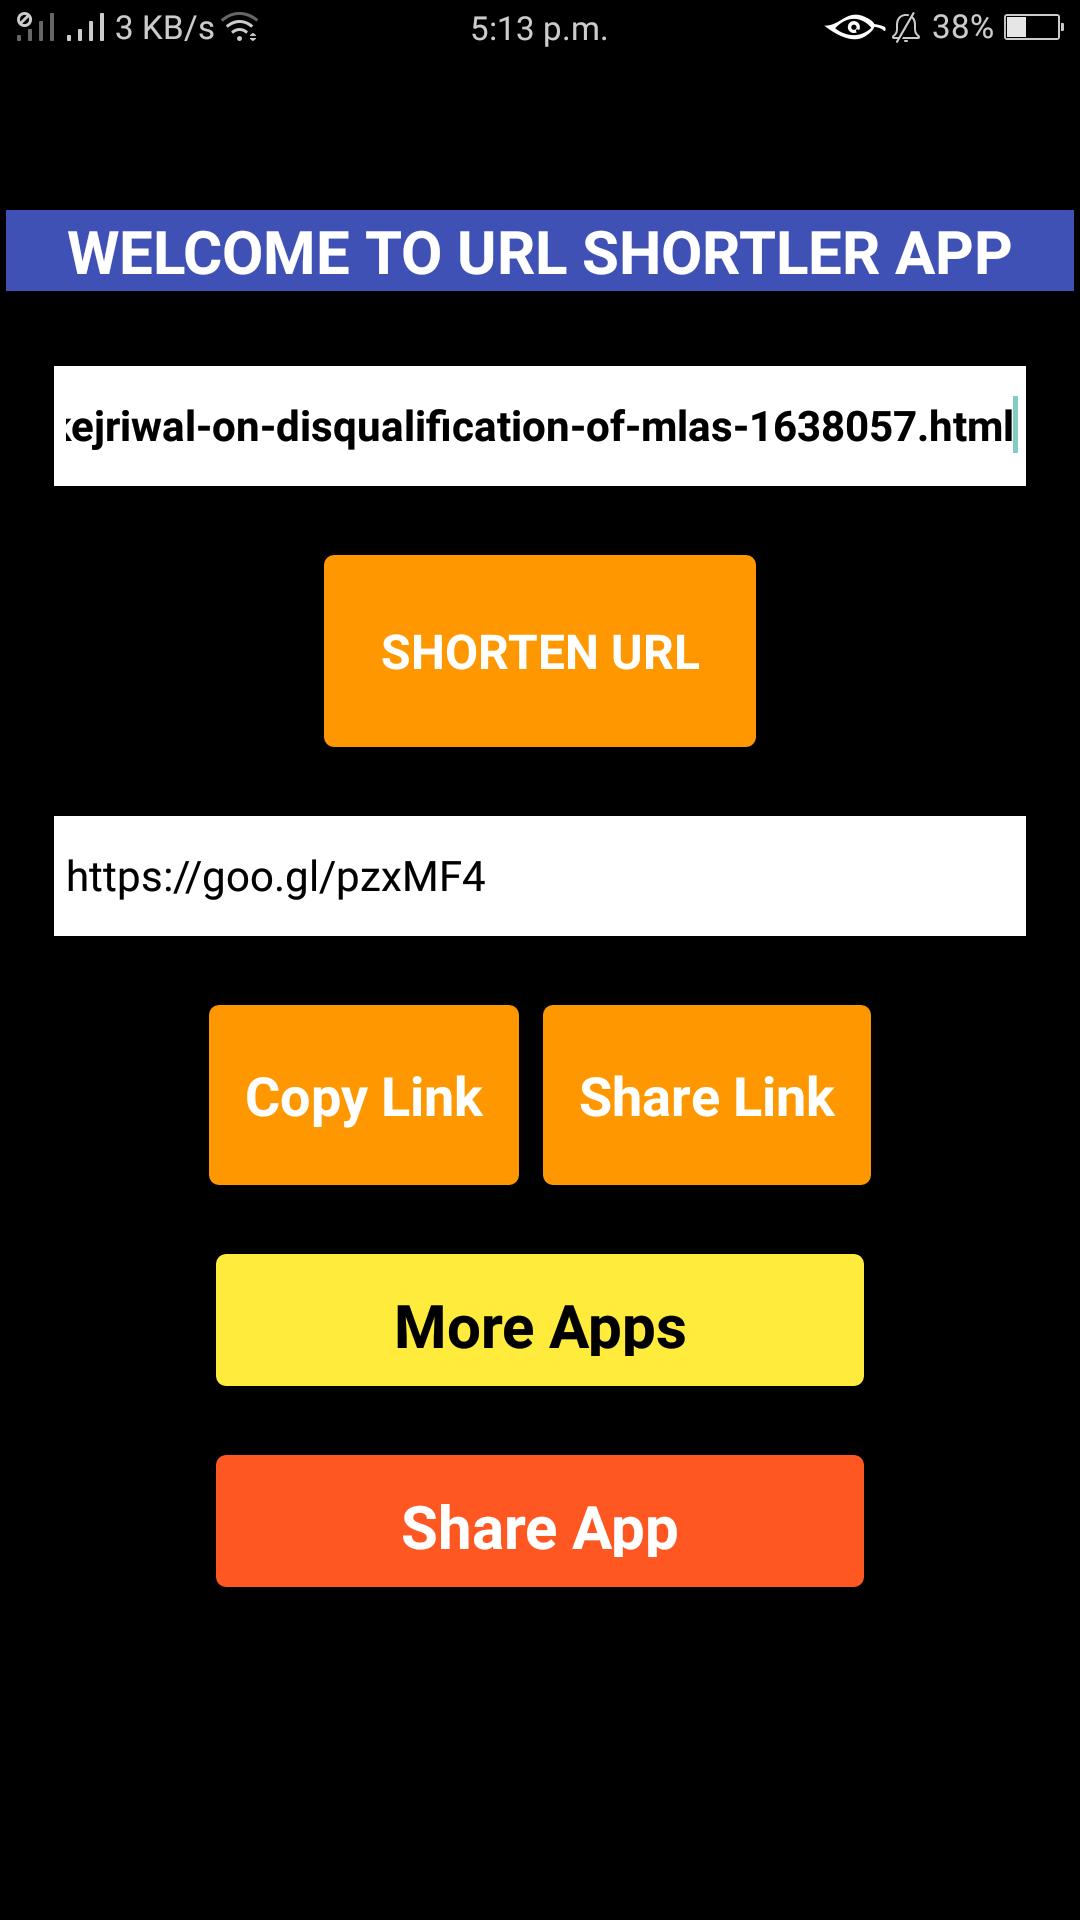 URL Shortler App (web link shortler) for Android - APK Download